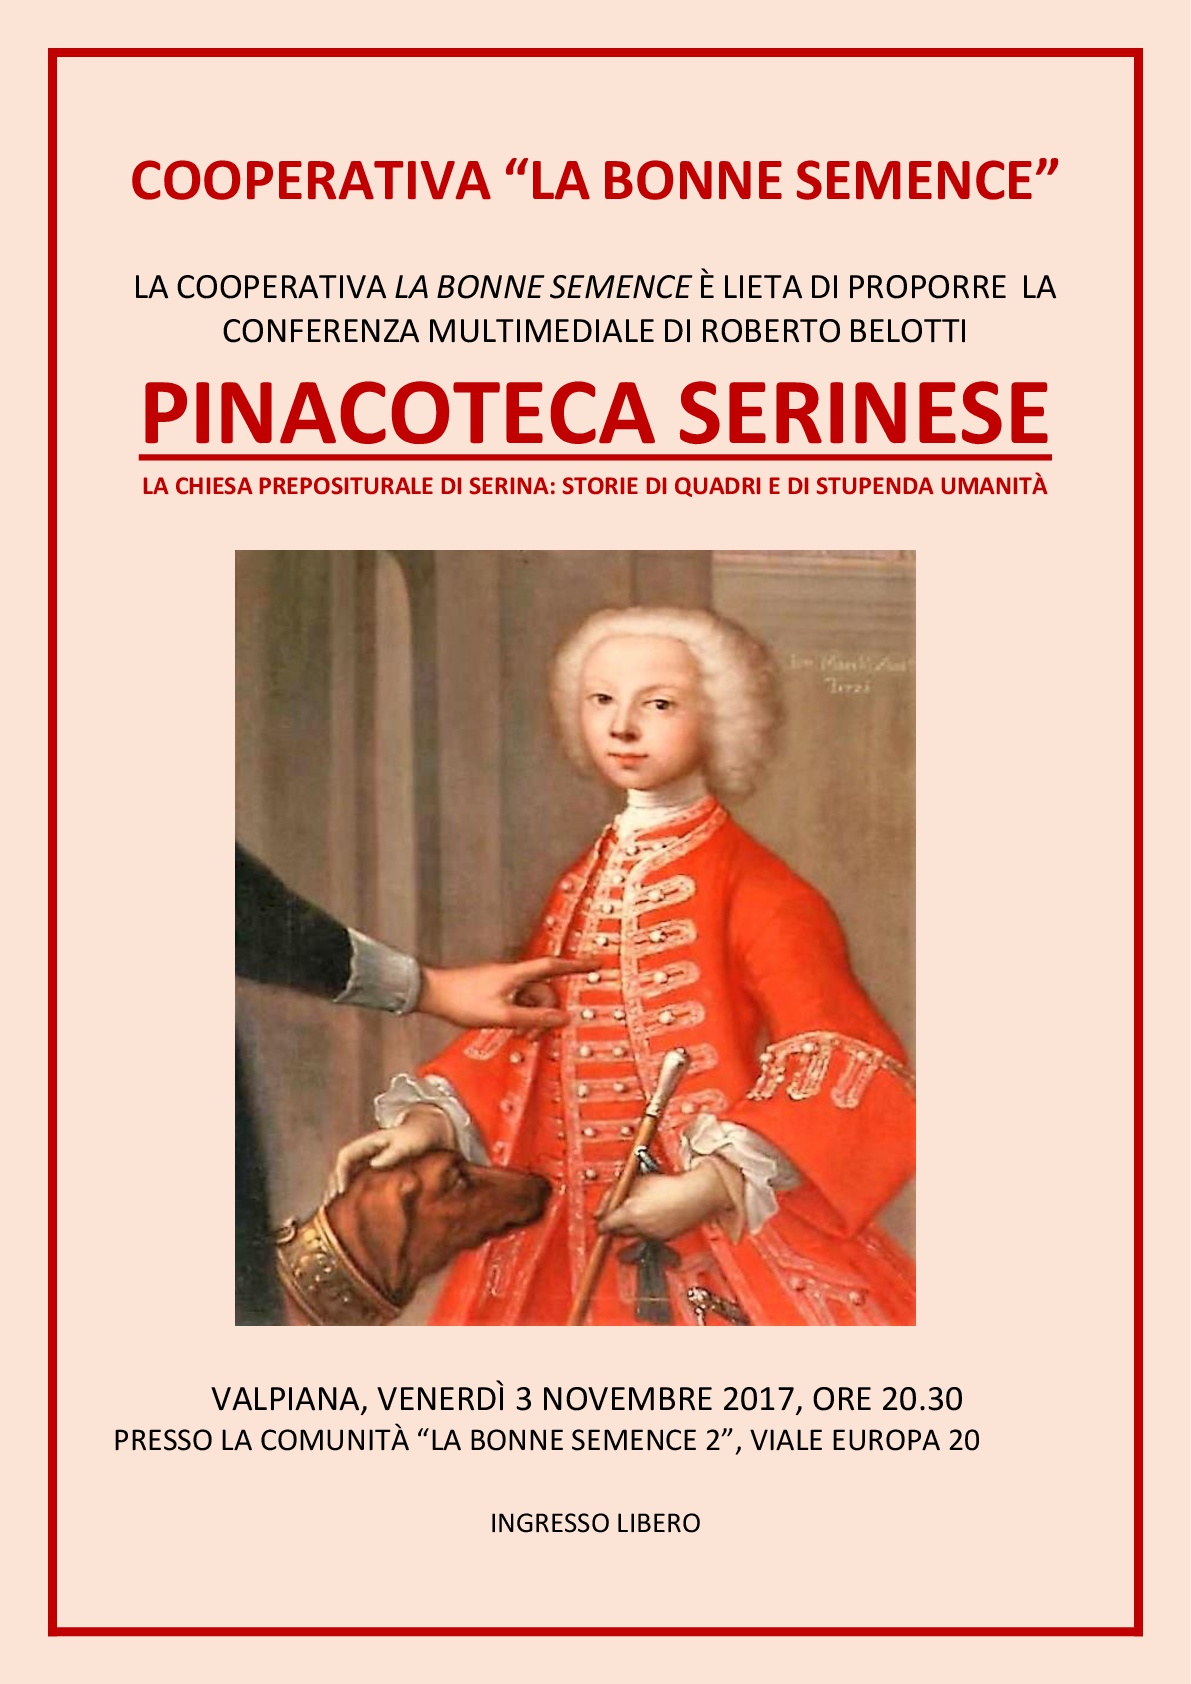 Locandina evento "Pinacoteca serinese"